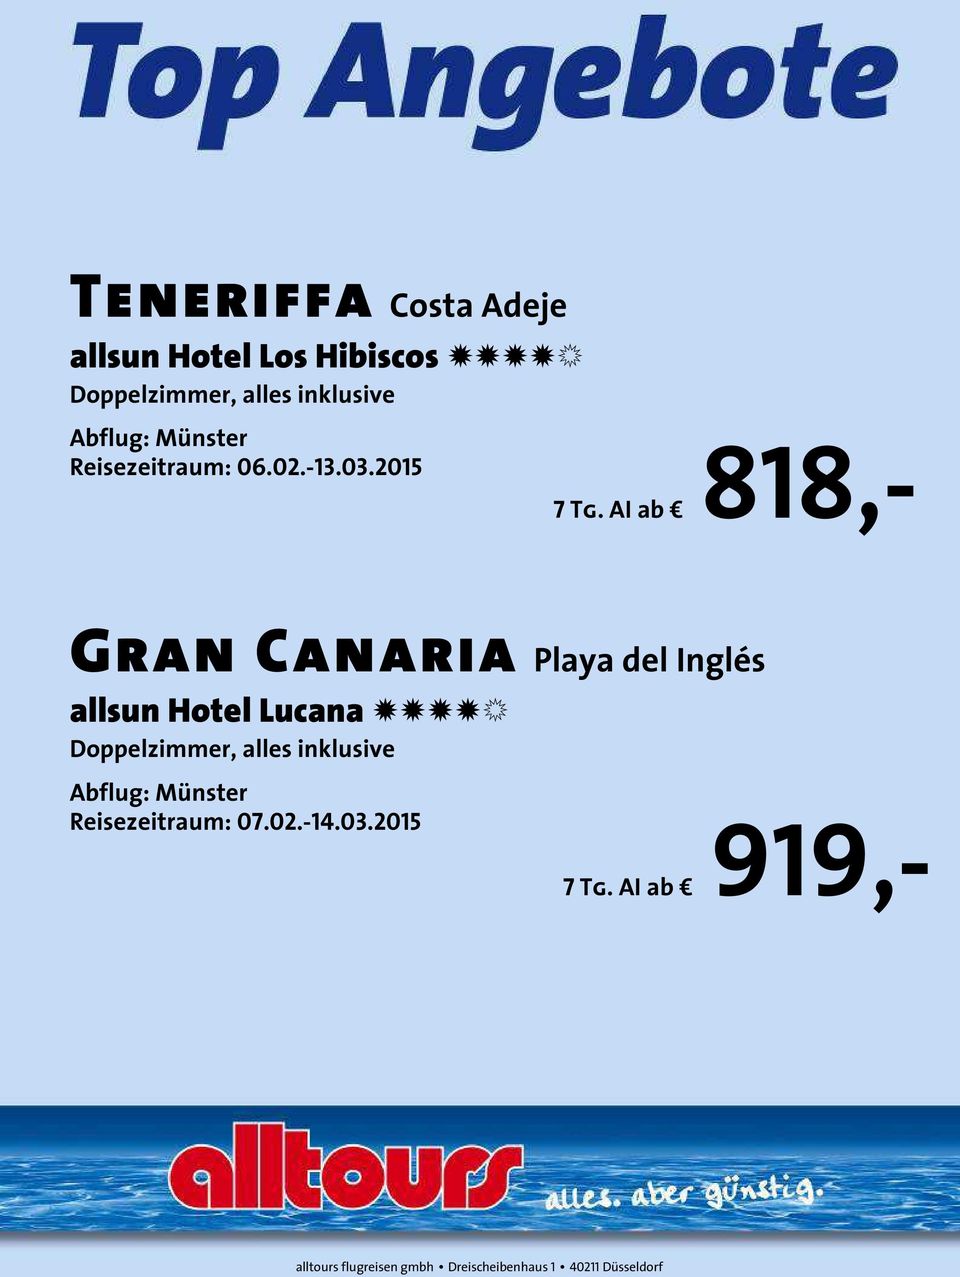 AI ab 818,- Gran Canaria Playa del Inglés allsun Hotel